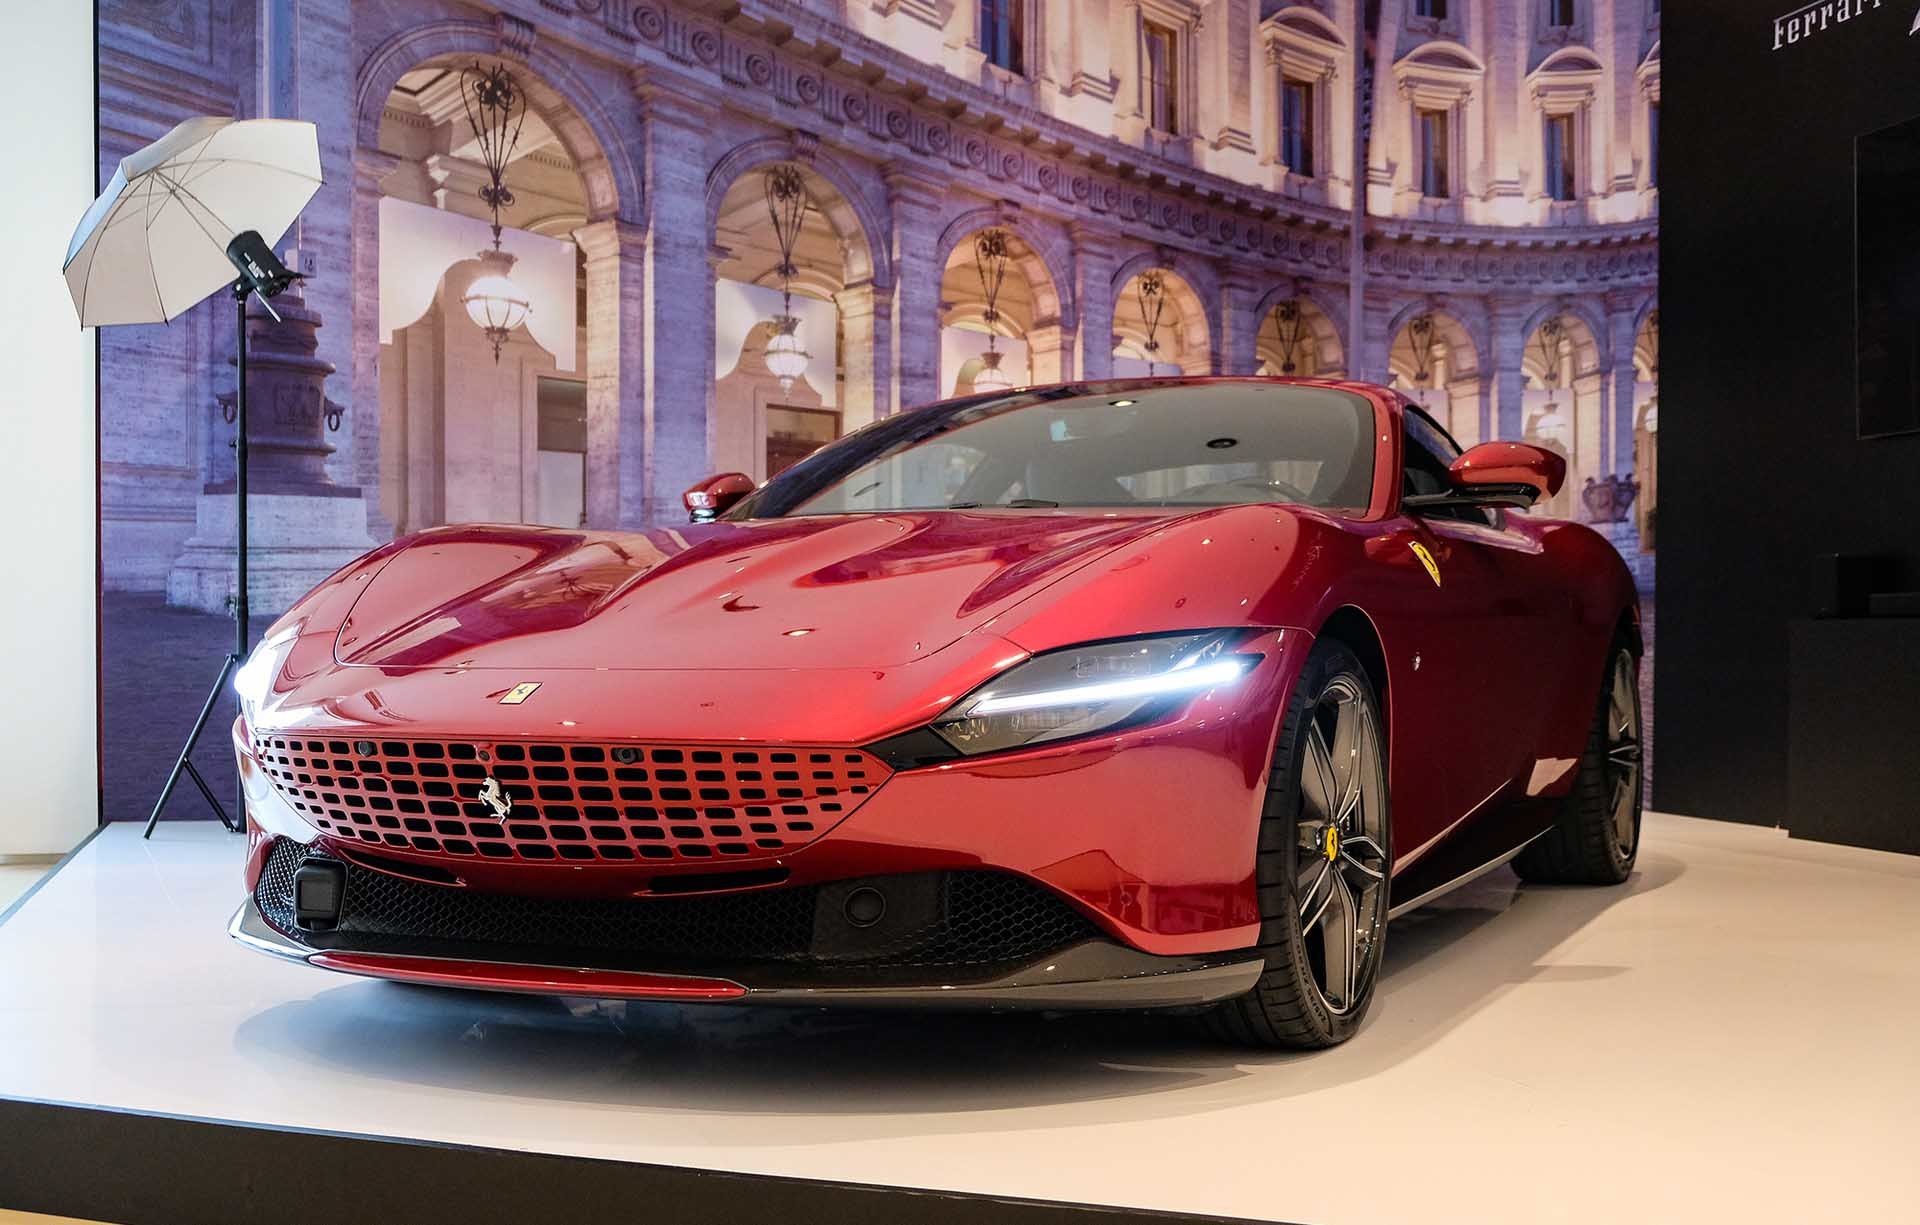 Siêu xe tầm giá 20 tỷ đồng, chọn Ferrari Roma hay Aston Martin DB11